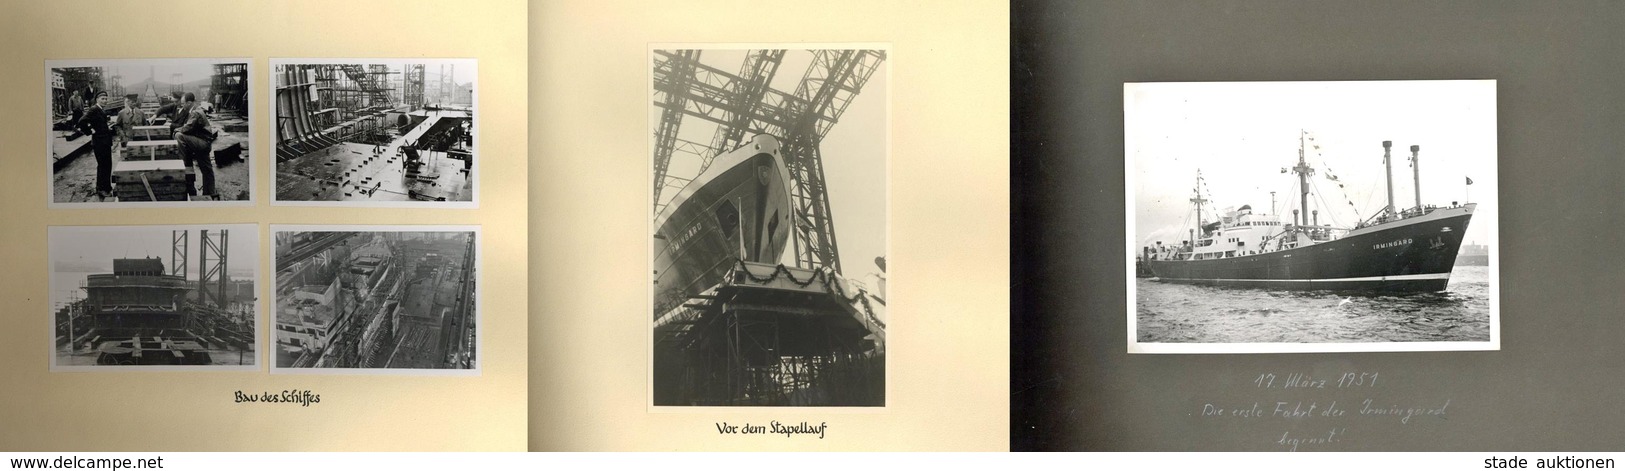 Schiff IRMGARD 1951, 2 Fotoalben Mit über 120 Fotos Vom Bau über Stapellauf Bis Zur 1. Fahrt, Hochinteressante Dokumenta - Warships